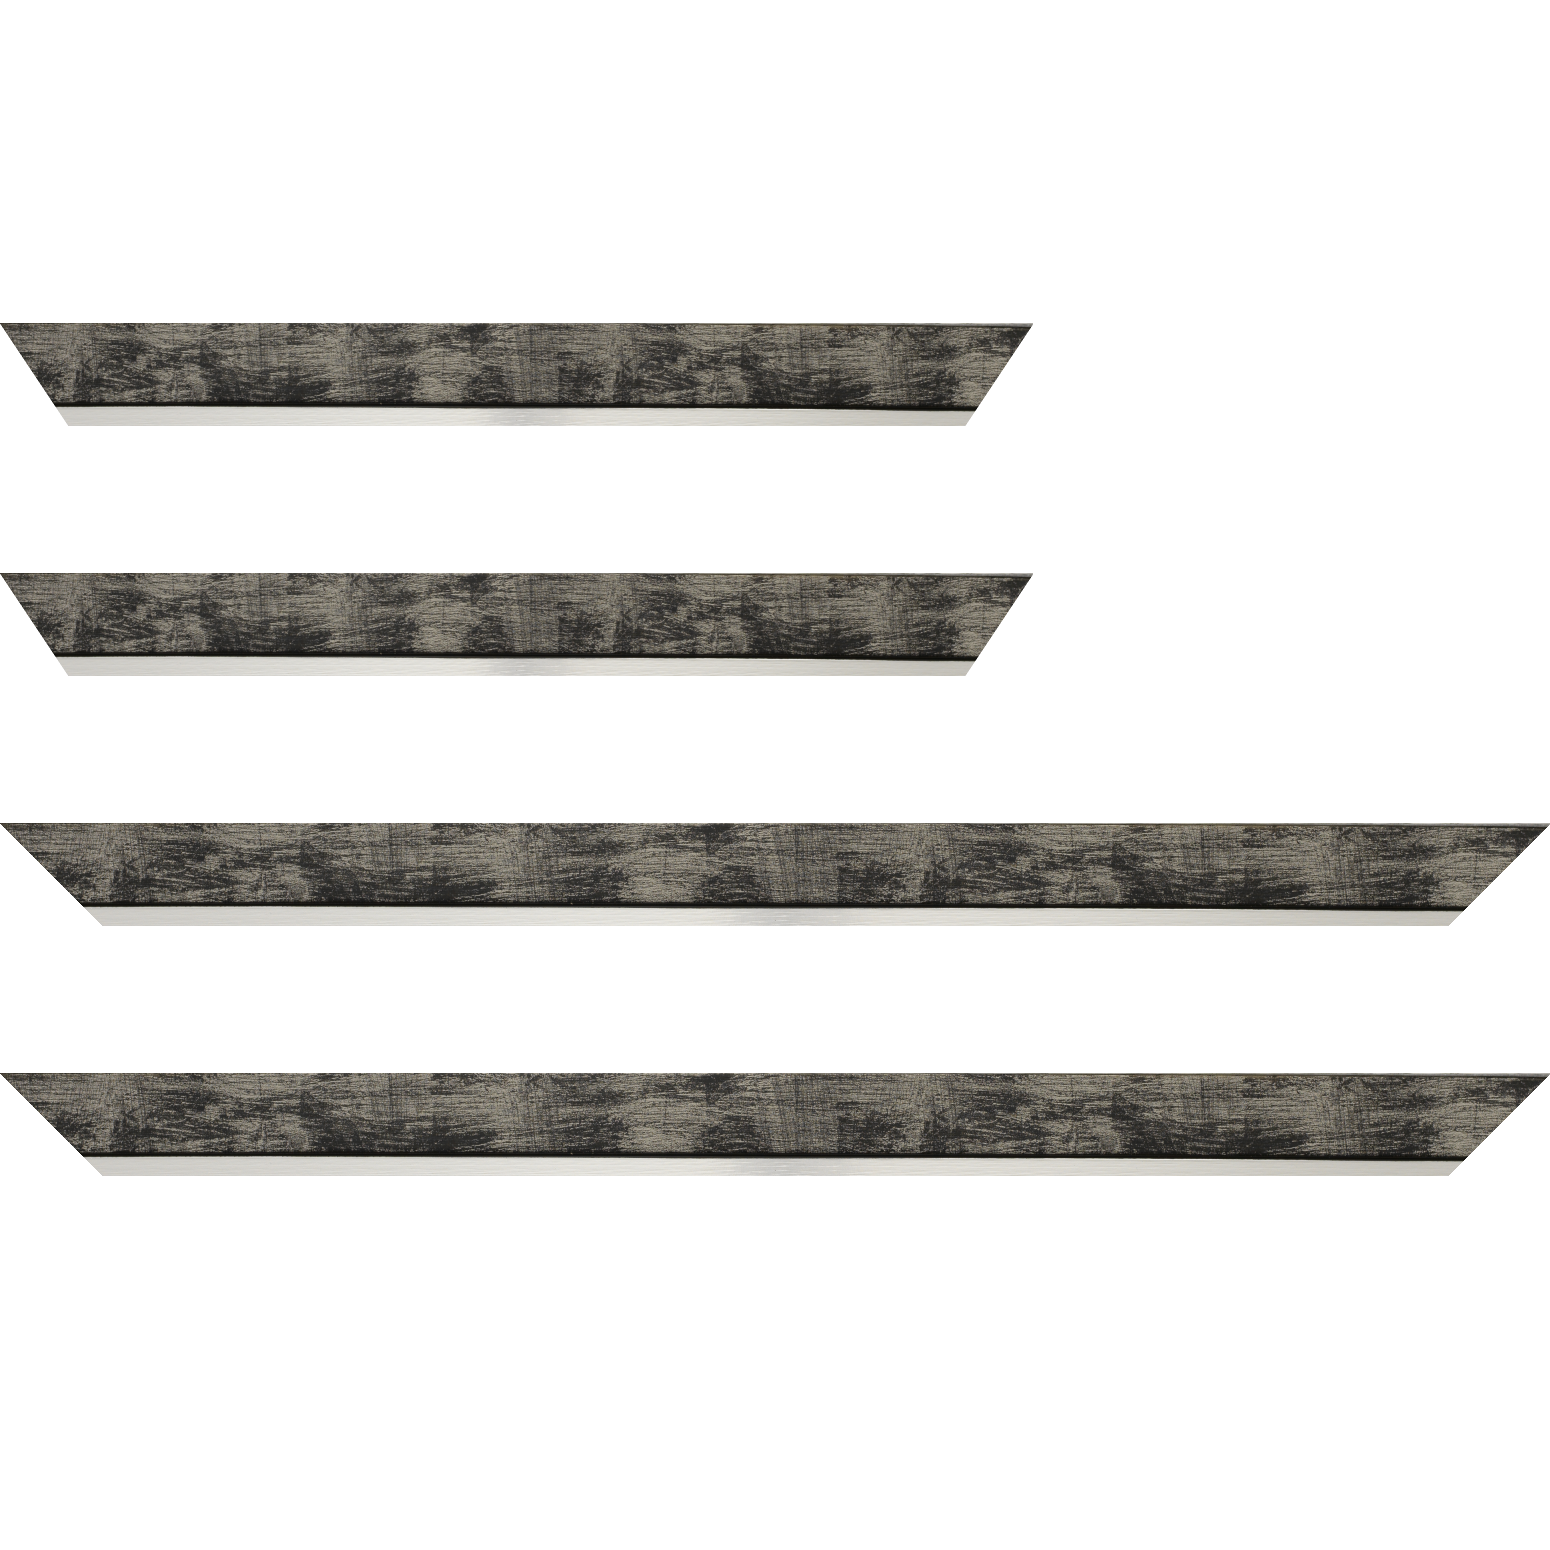 Baguette bois profil plat largeur 3.3cm couleur noir fond argent filet argent - 92x60